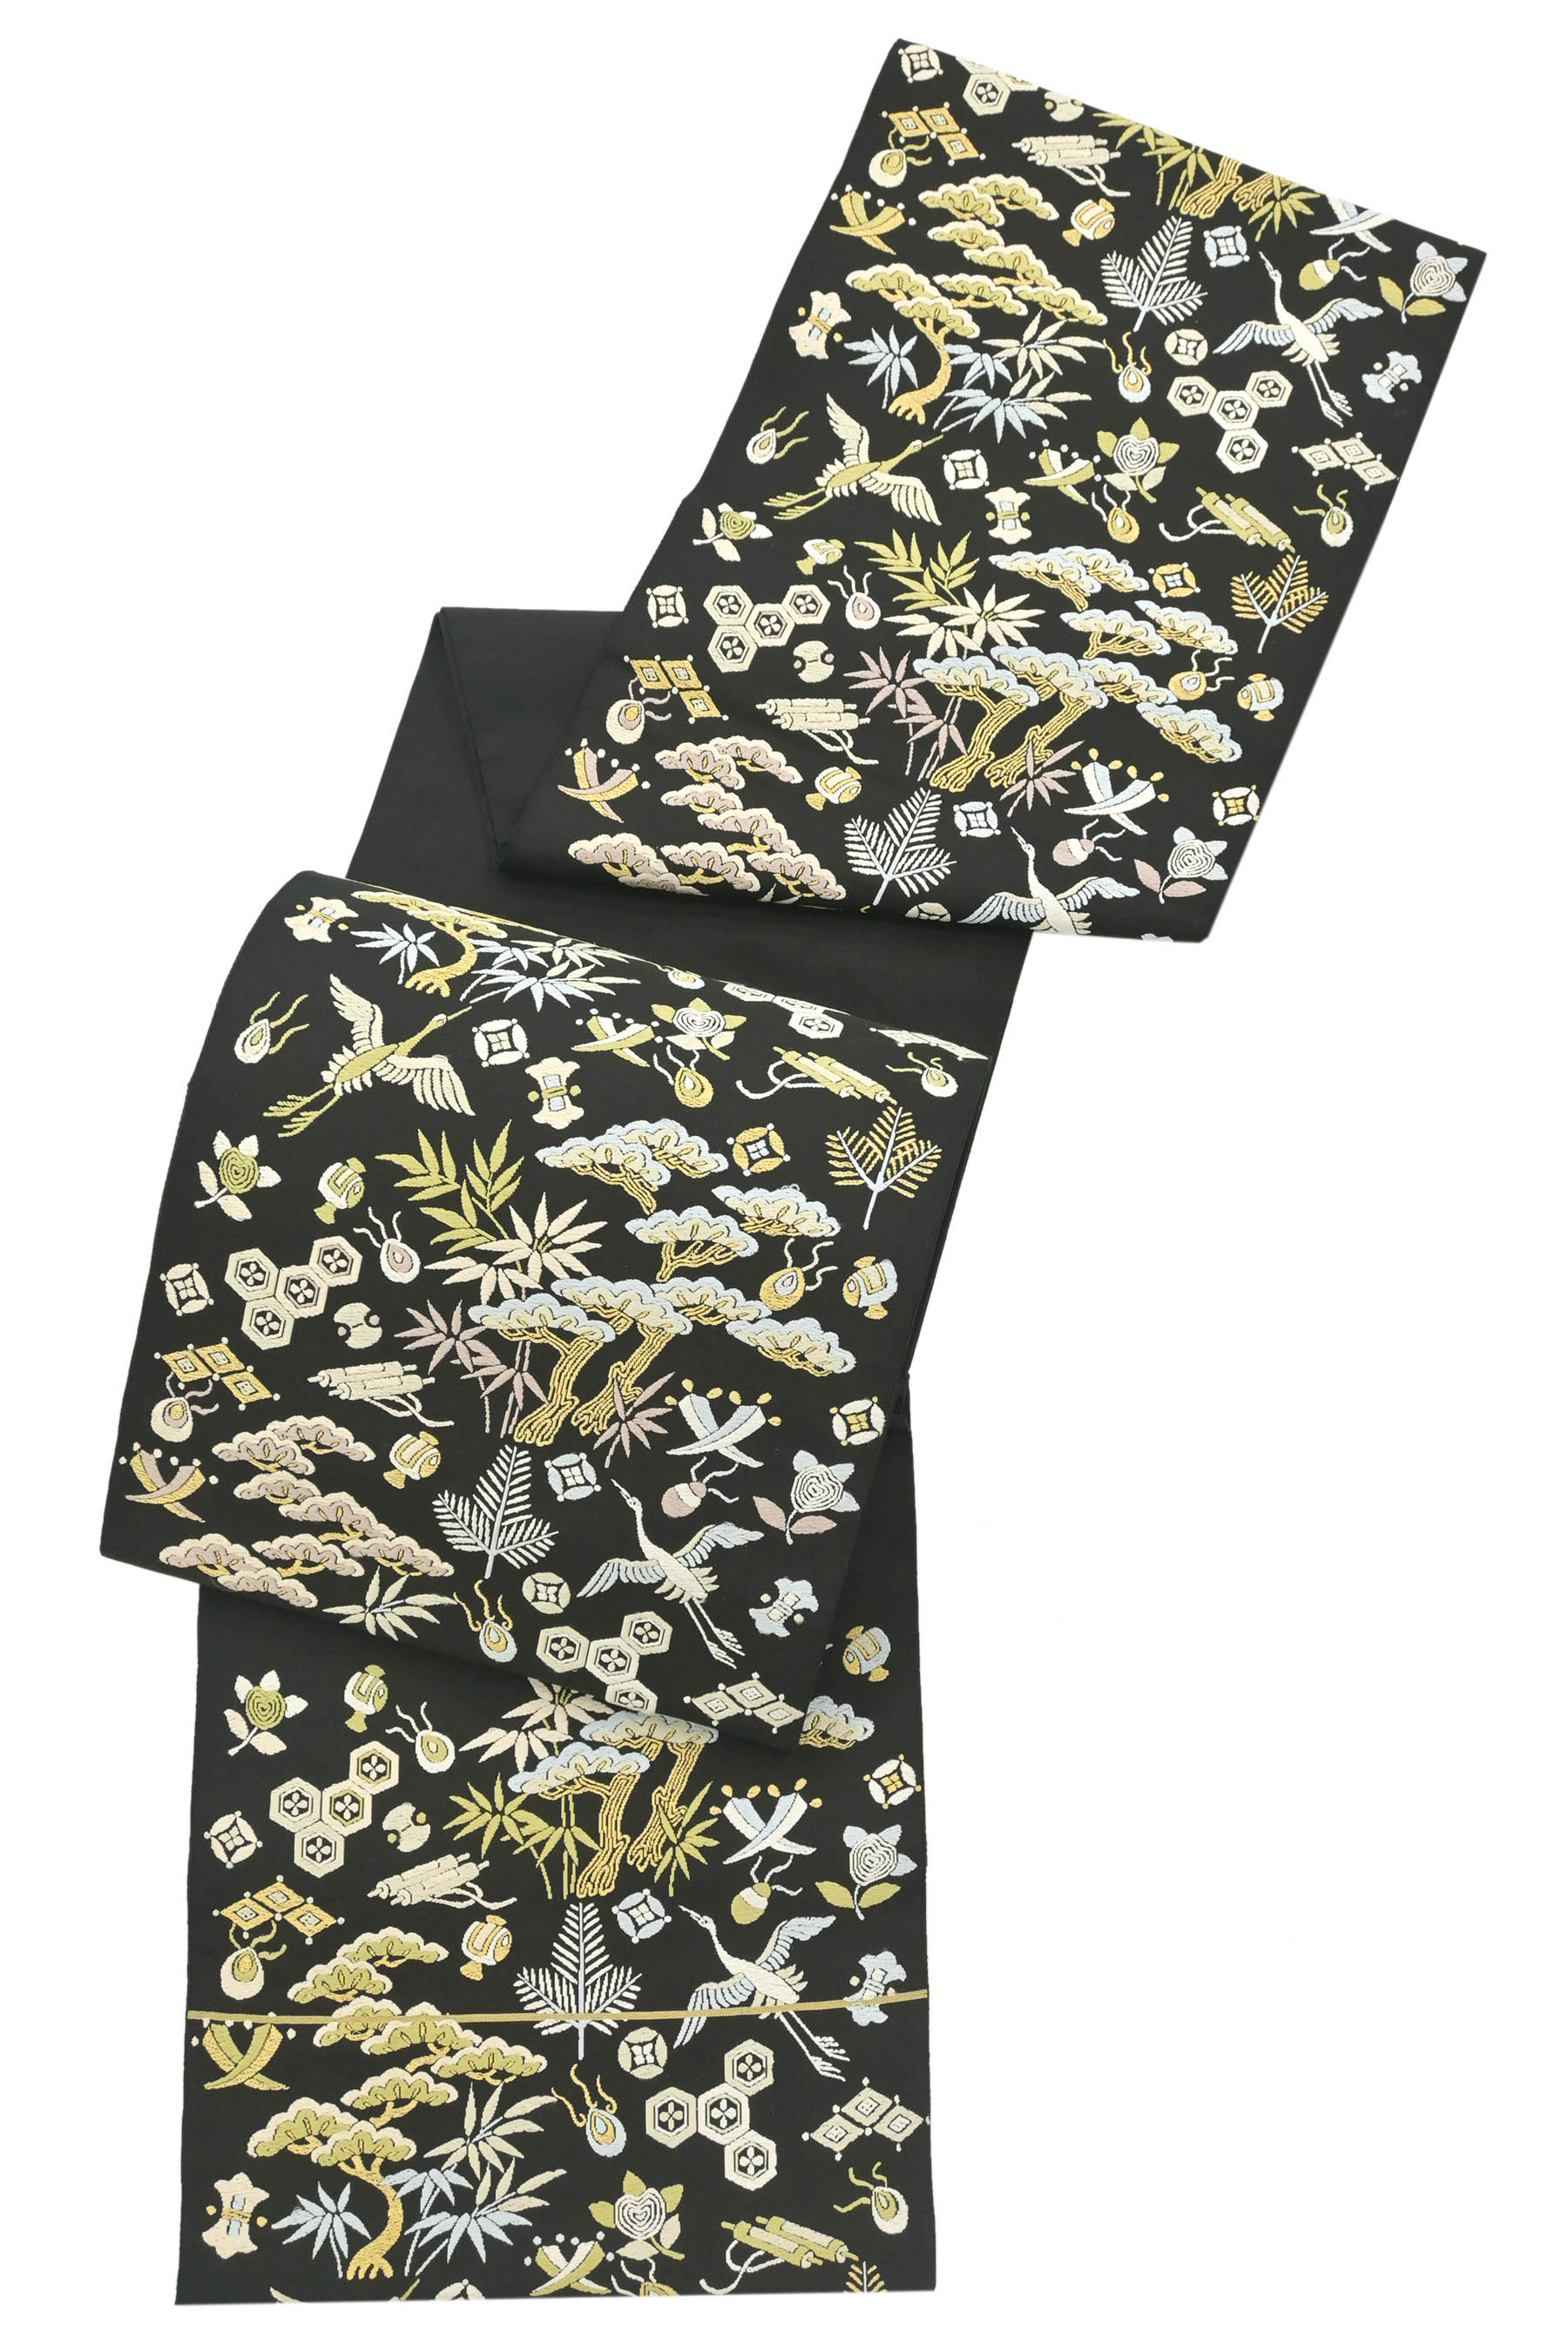 綺麗な鶴達の袋帯【正絹】仕立て上がり - 着物・浴衣